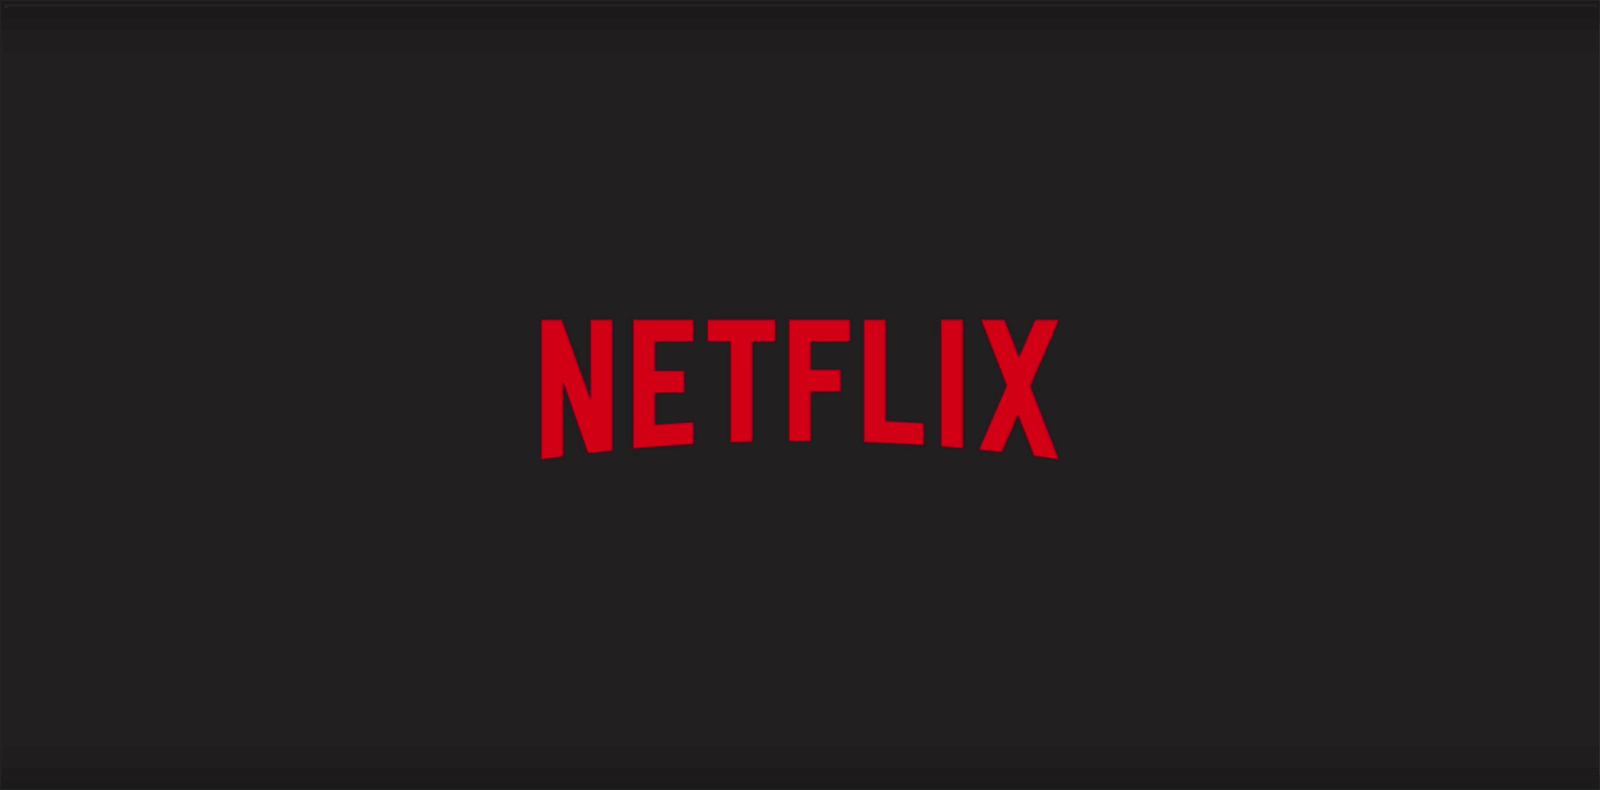 Image of the Netflix logo